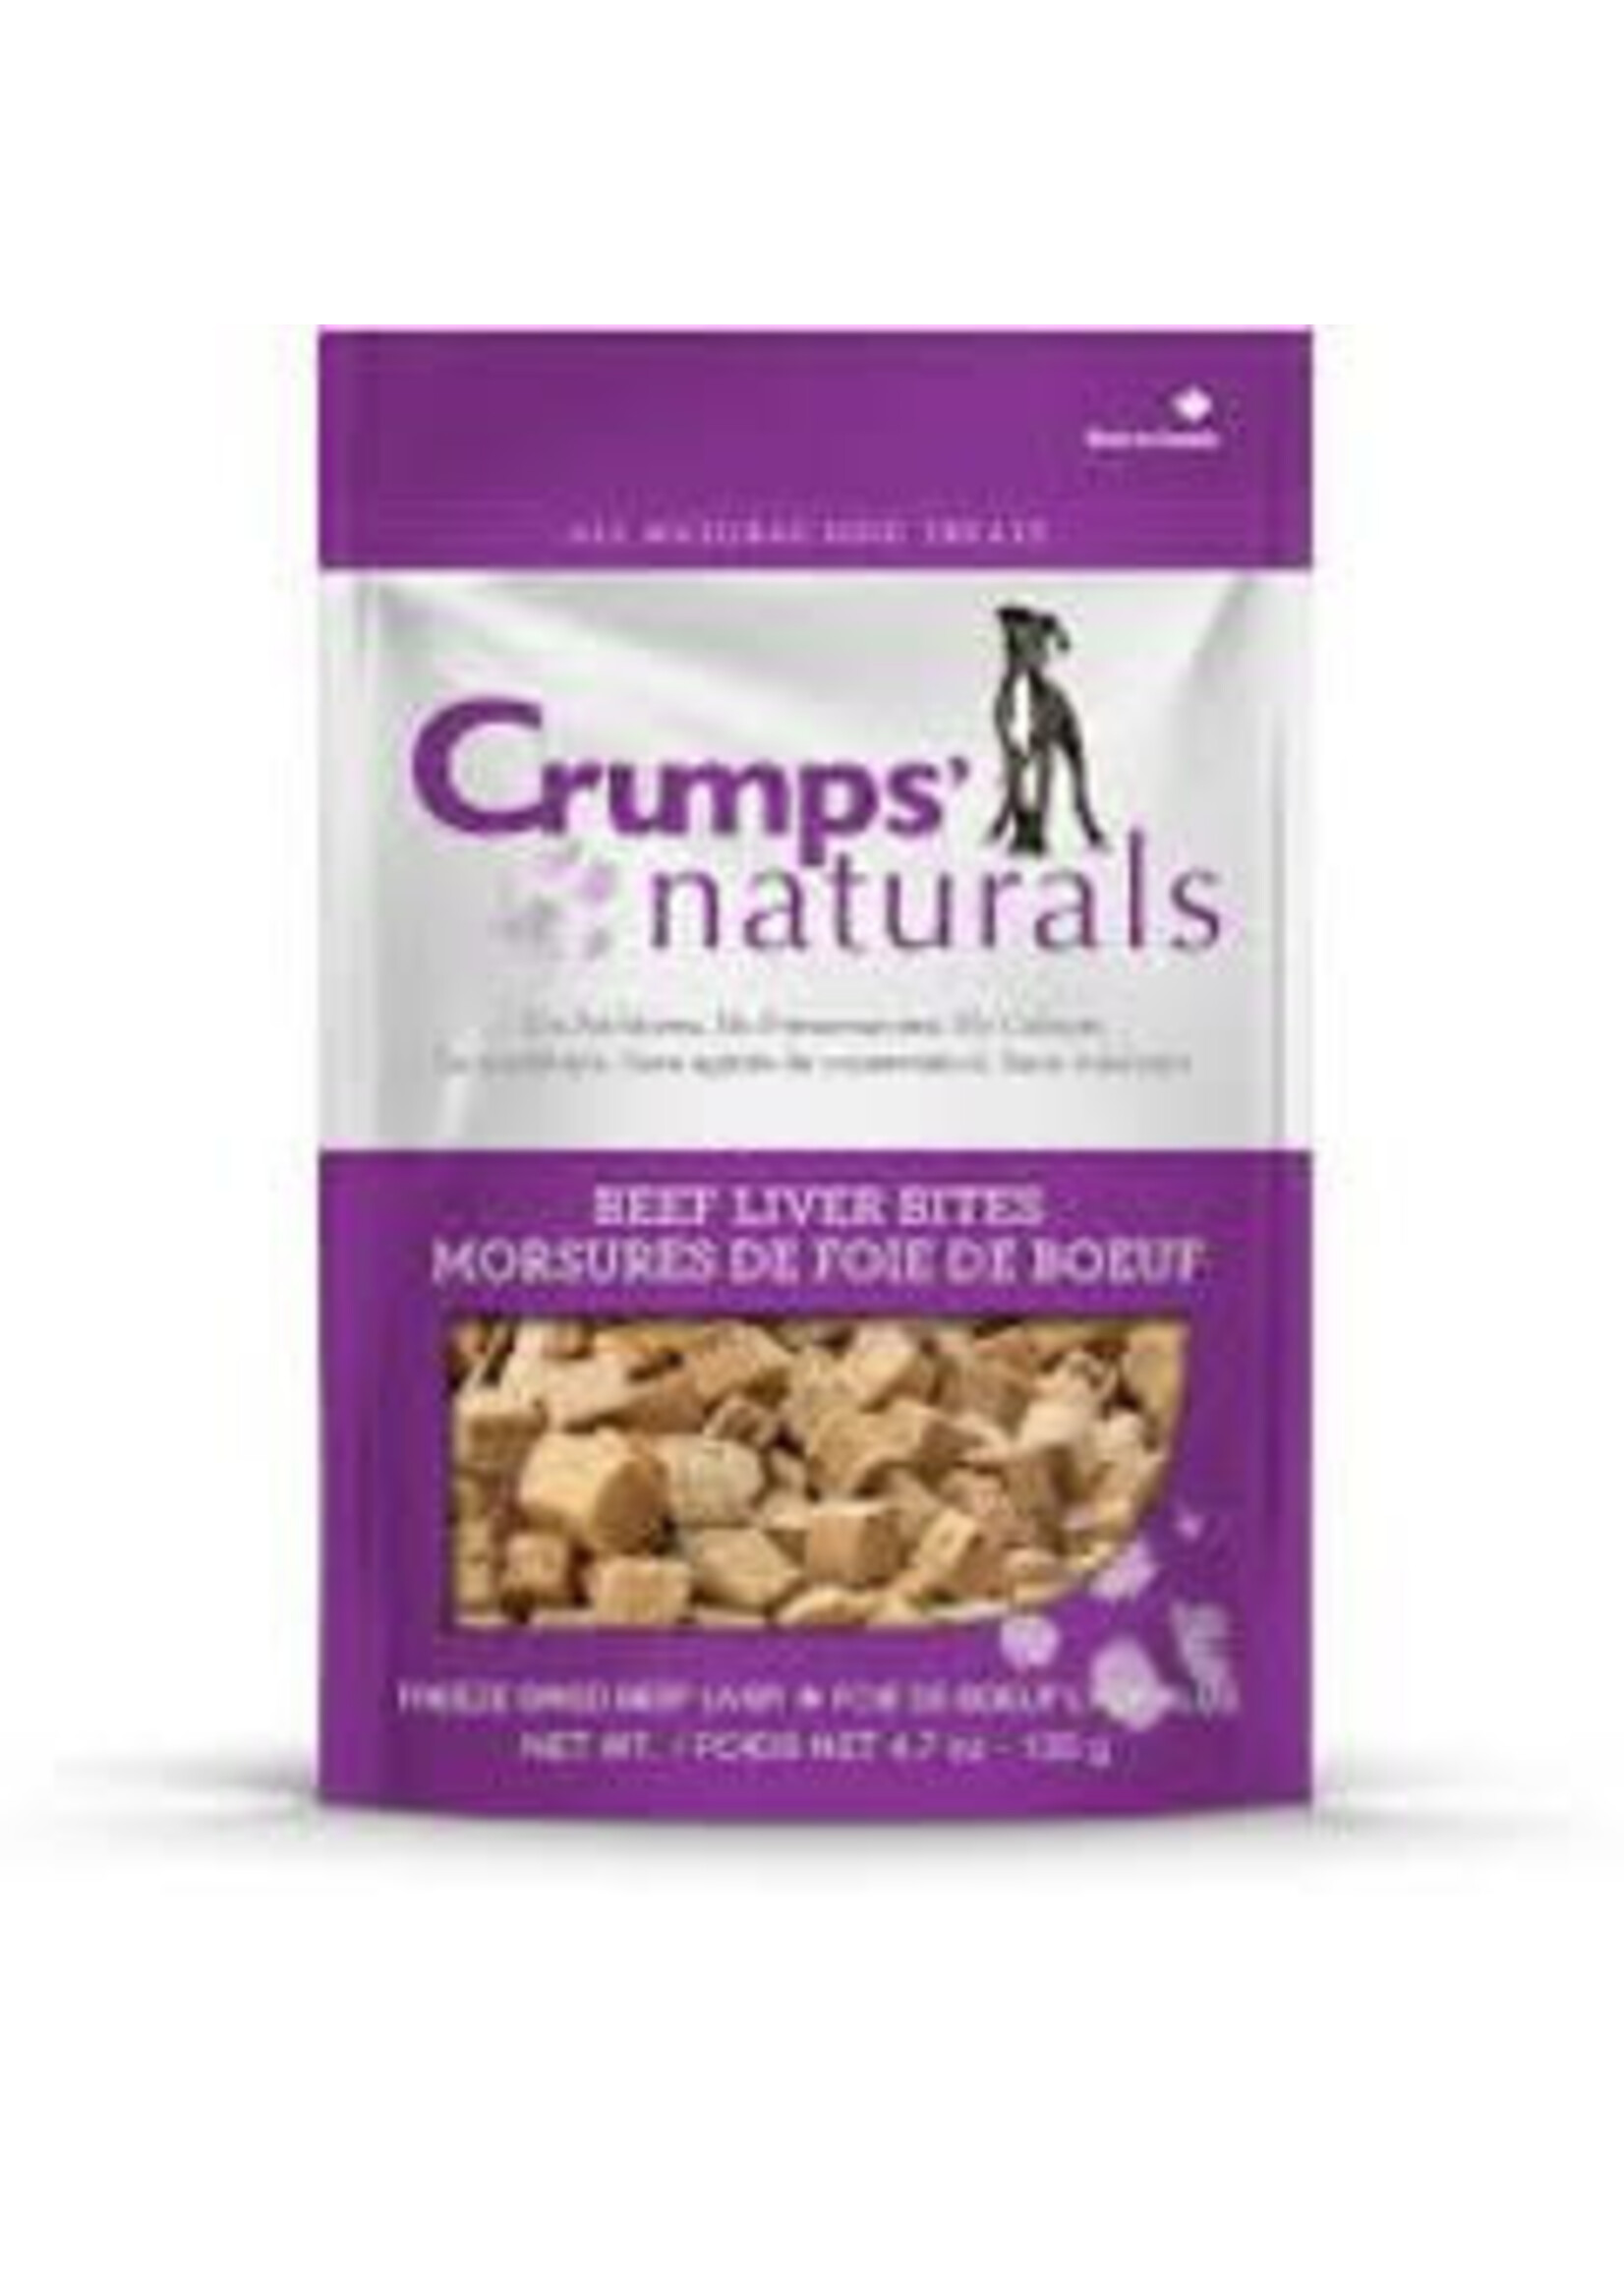 Crumps' Naturals Crumps Naturals - Beef Liver Bites 4.7oz